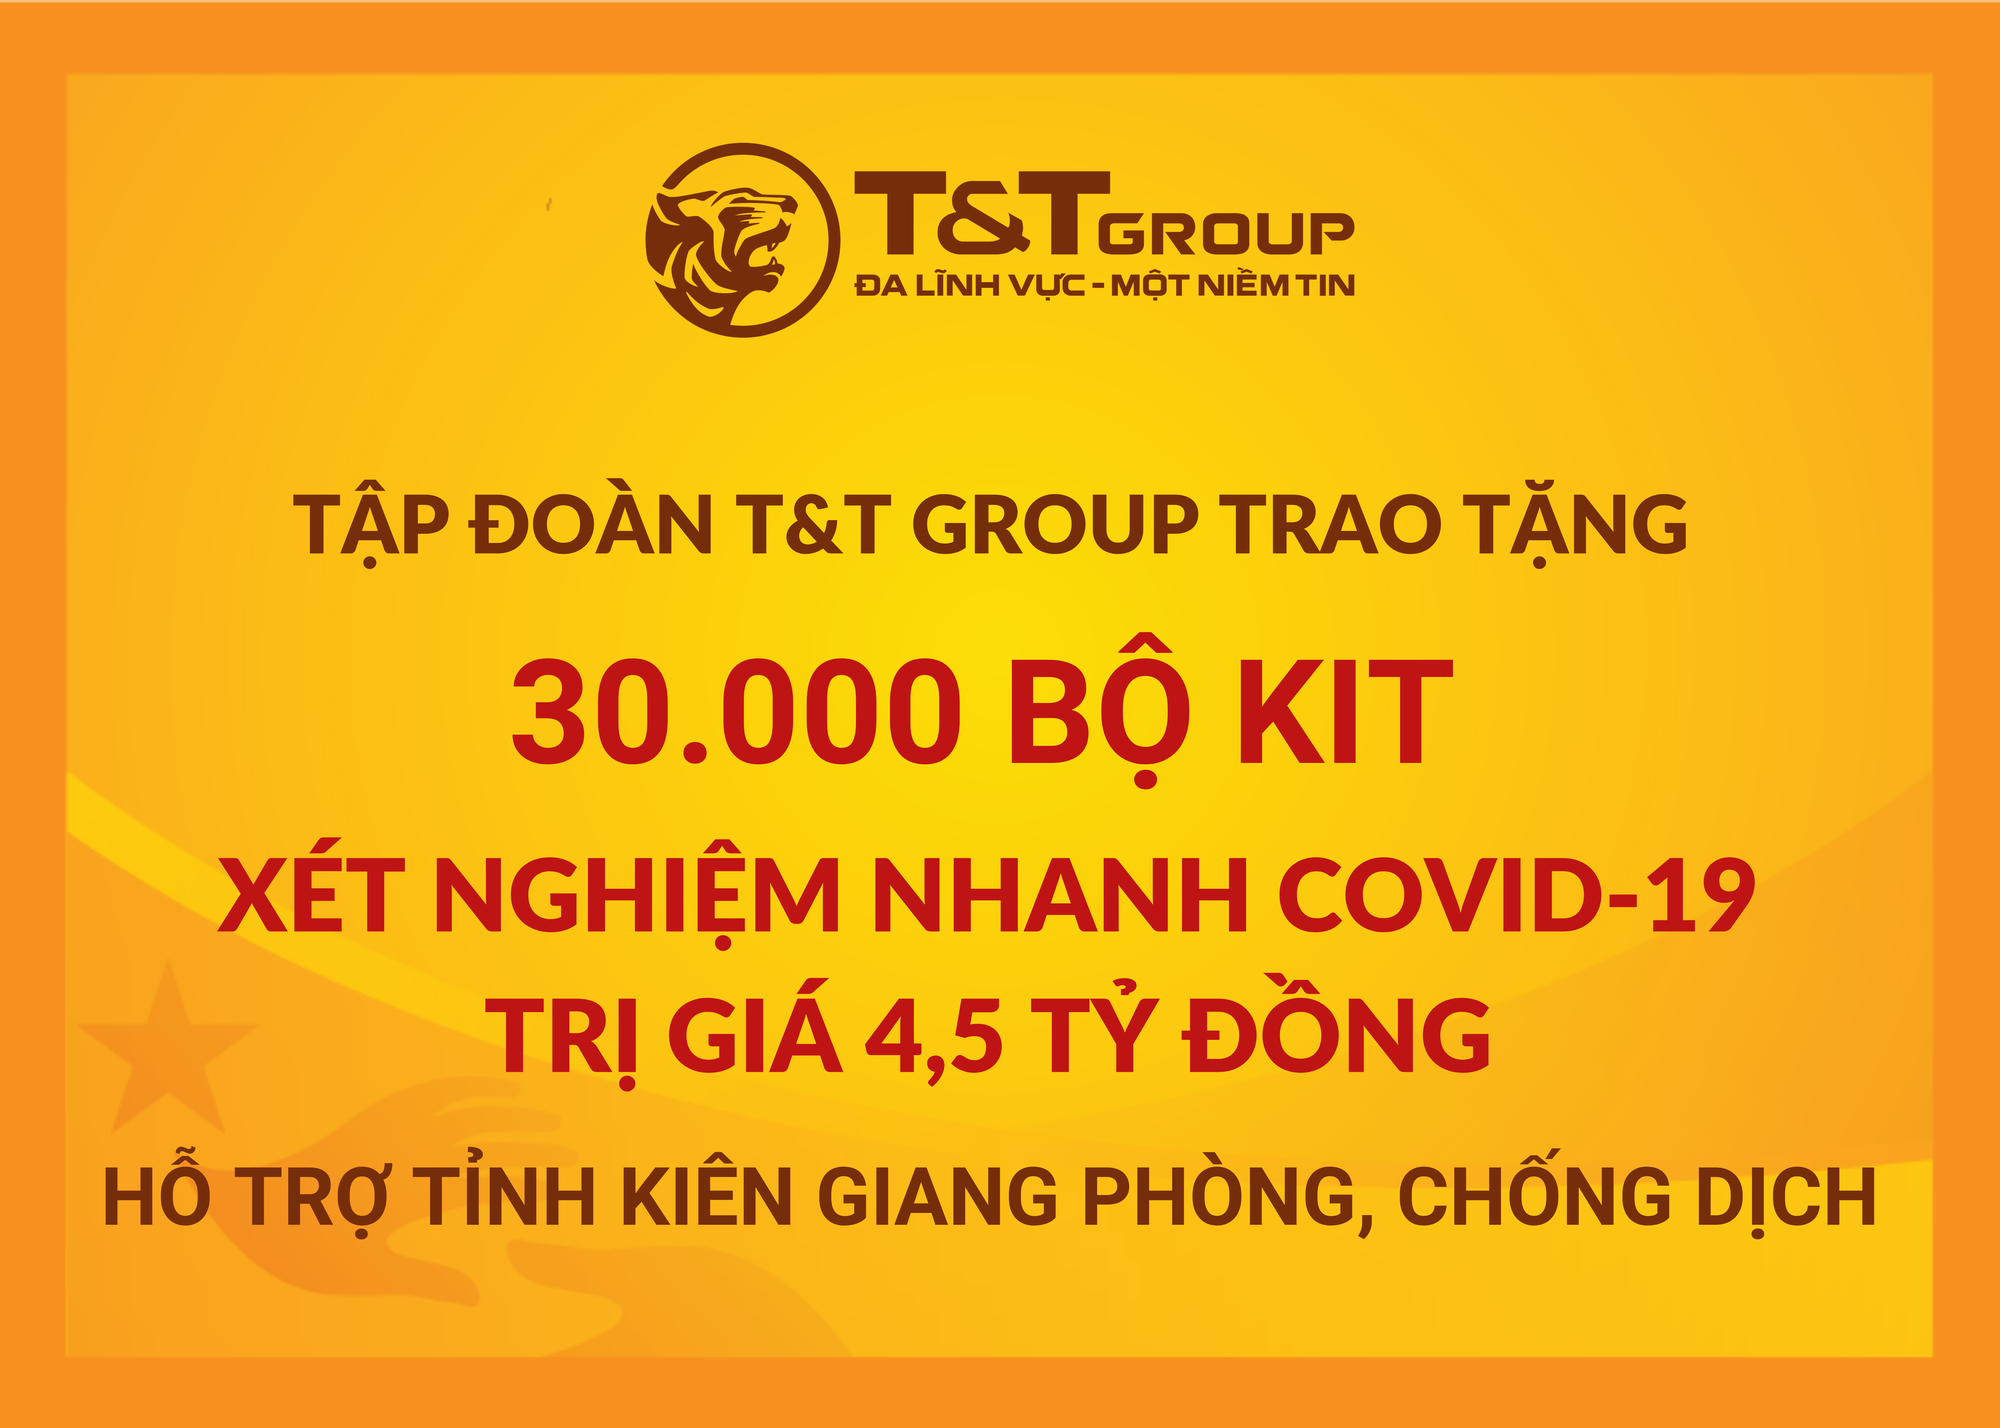 T&T Group tặng 50.000 bộ kit xét nghiệm nhanh Covid-19 trị giá 7,5 tỷ đồng cho Thanh Hóa và Kiên Giang - Ảnh 4.